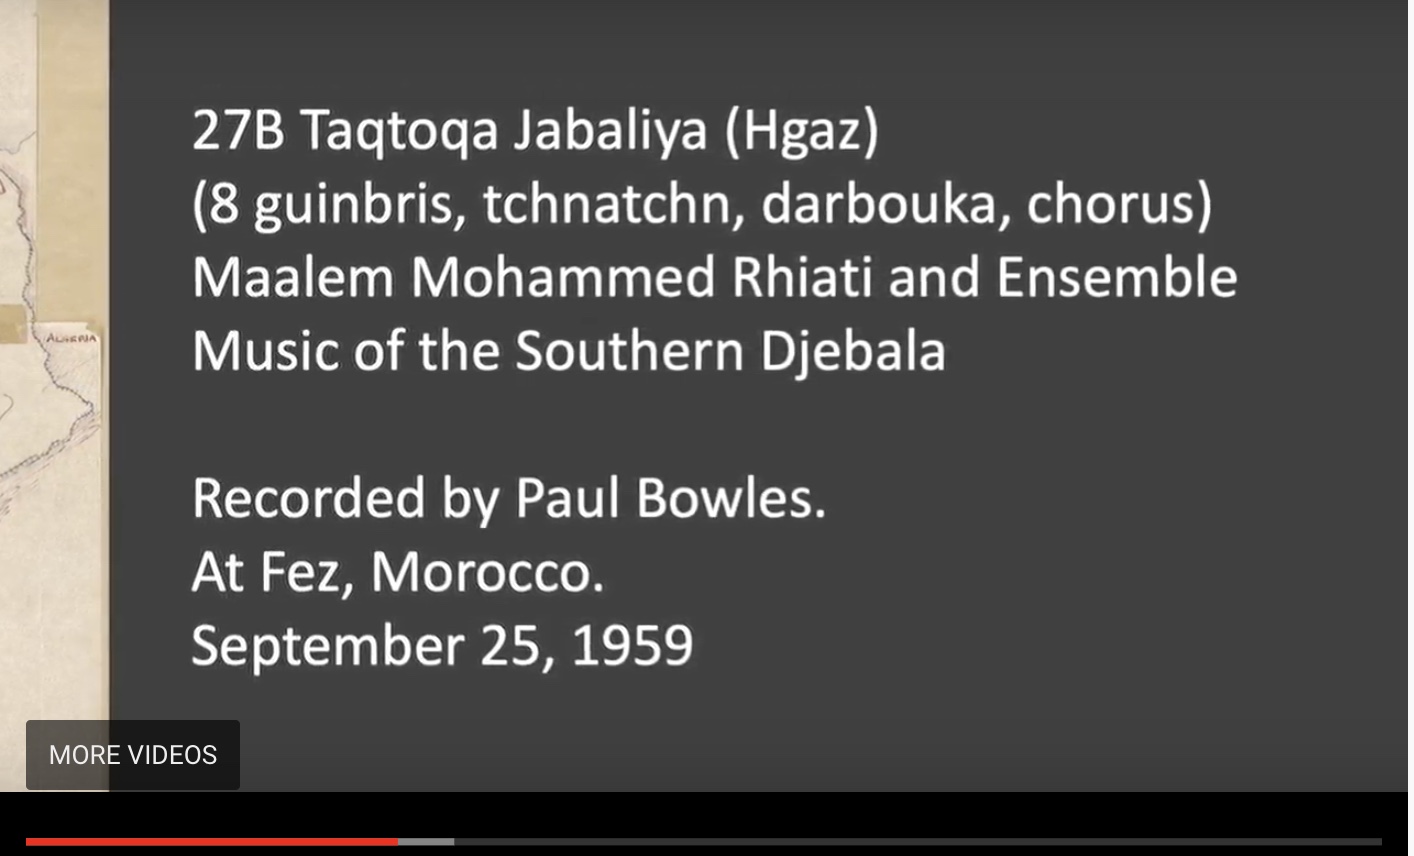  Maalem Mohammed Rhiati and Ensemble - 27B Taqtoqa Jabaliya (Hgaz), Maalem Mohammed Rhiati and Ensemble